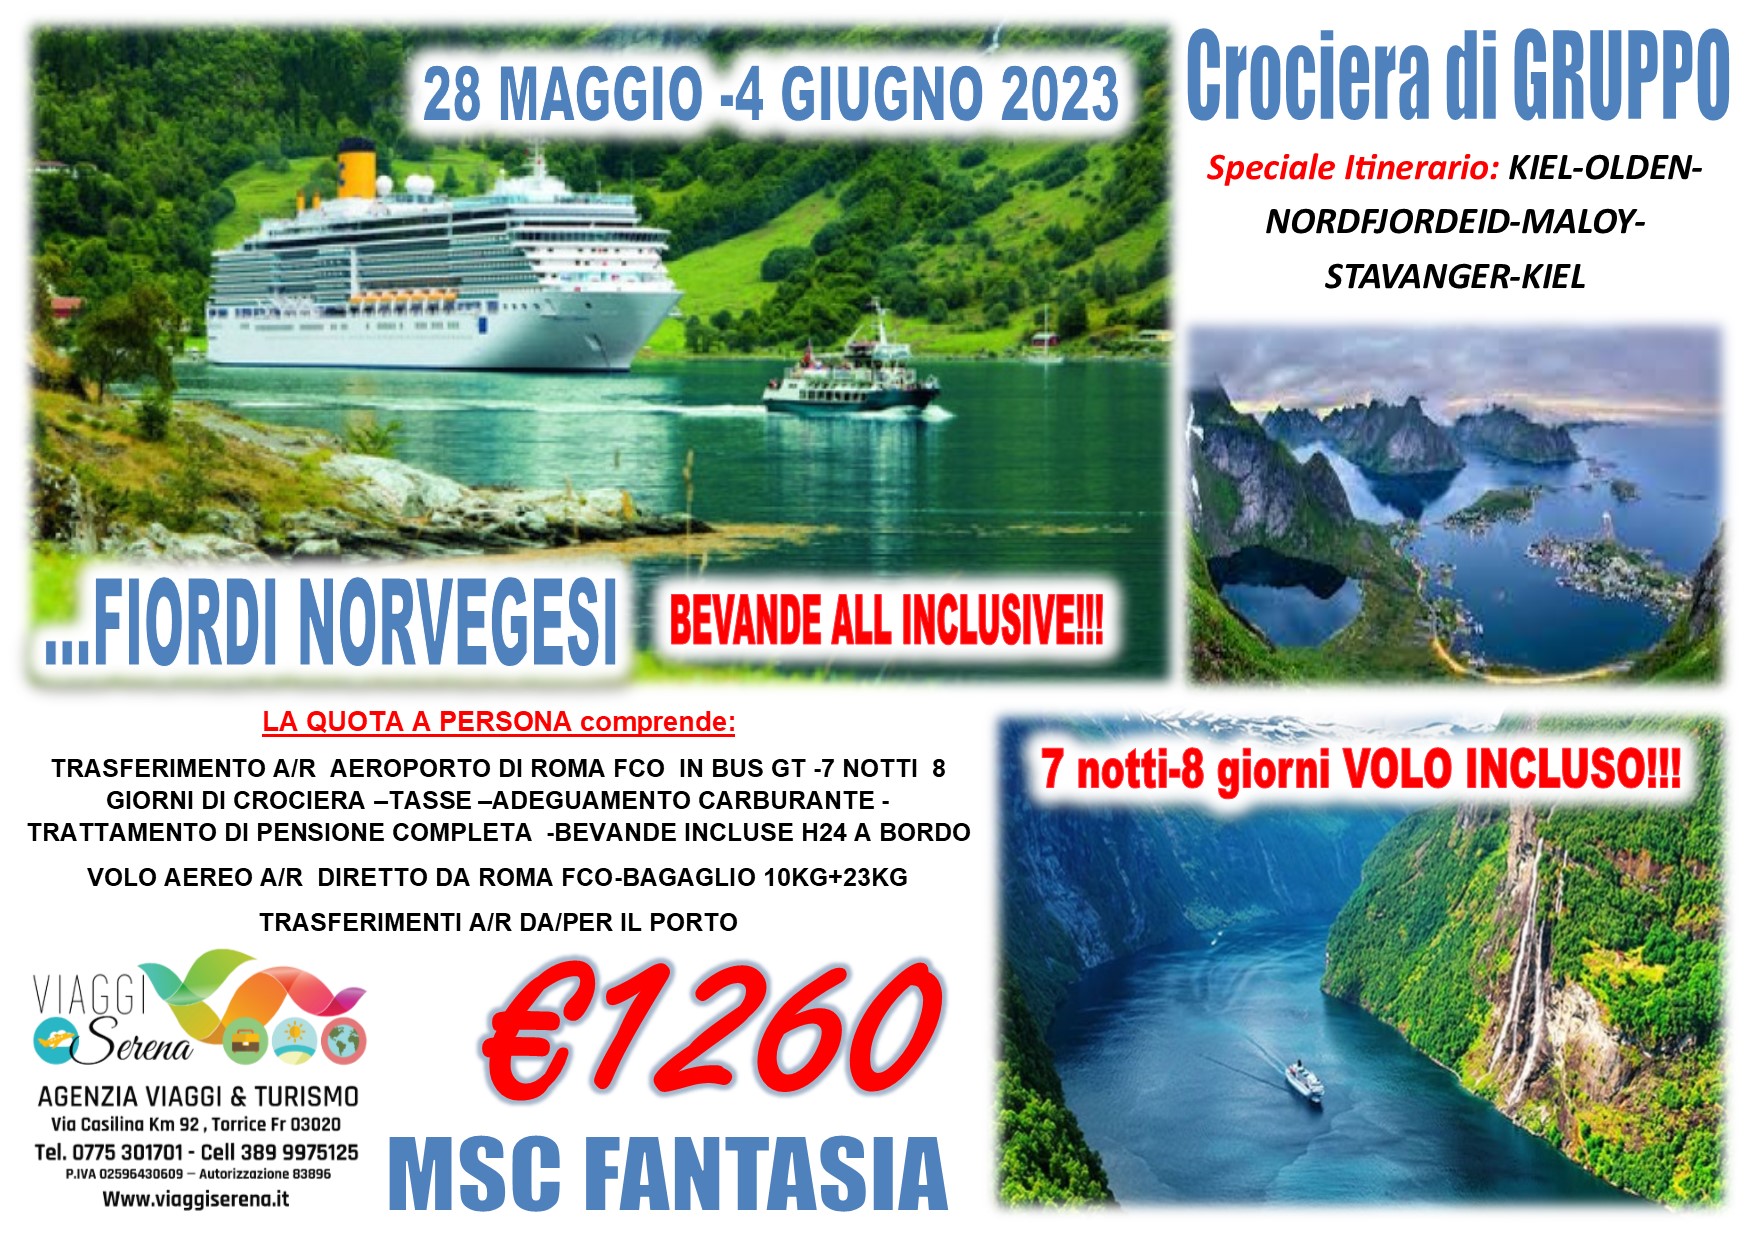 Viaggi di Gruppo: Crociera Fiordi Norvegesi con volo incluso 28 Maggio- 4 Giugno 2023 € 1260,00